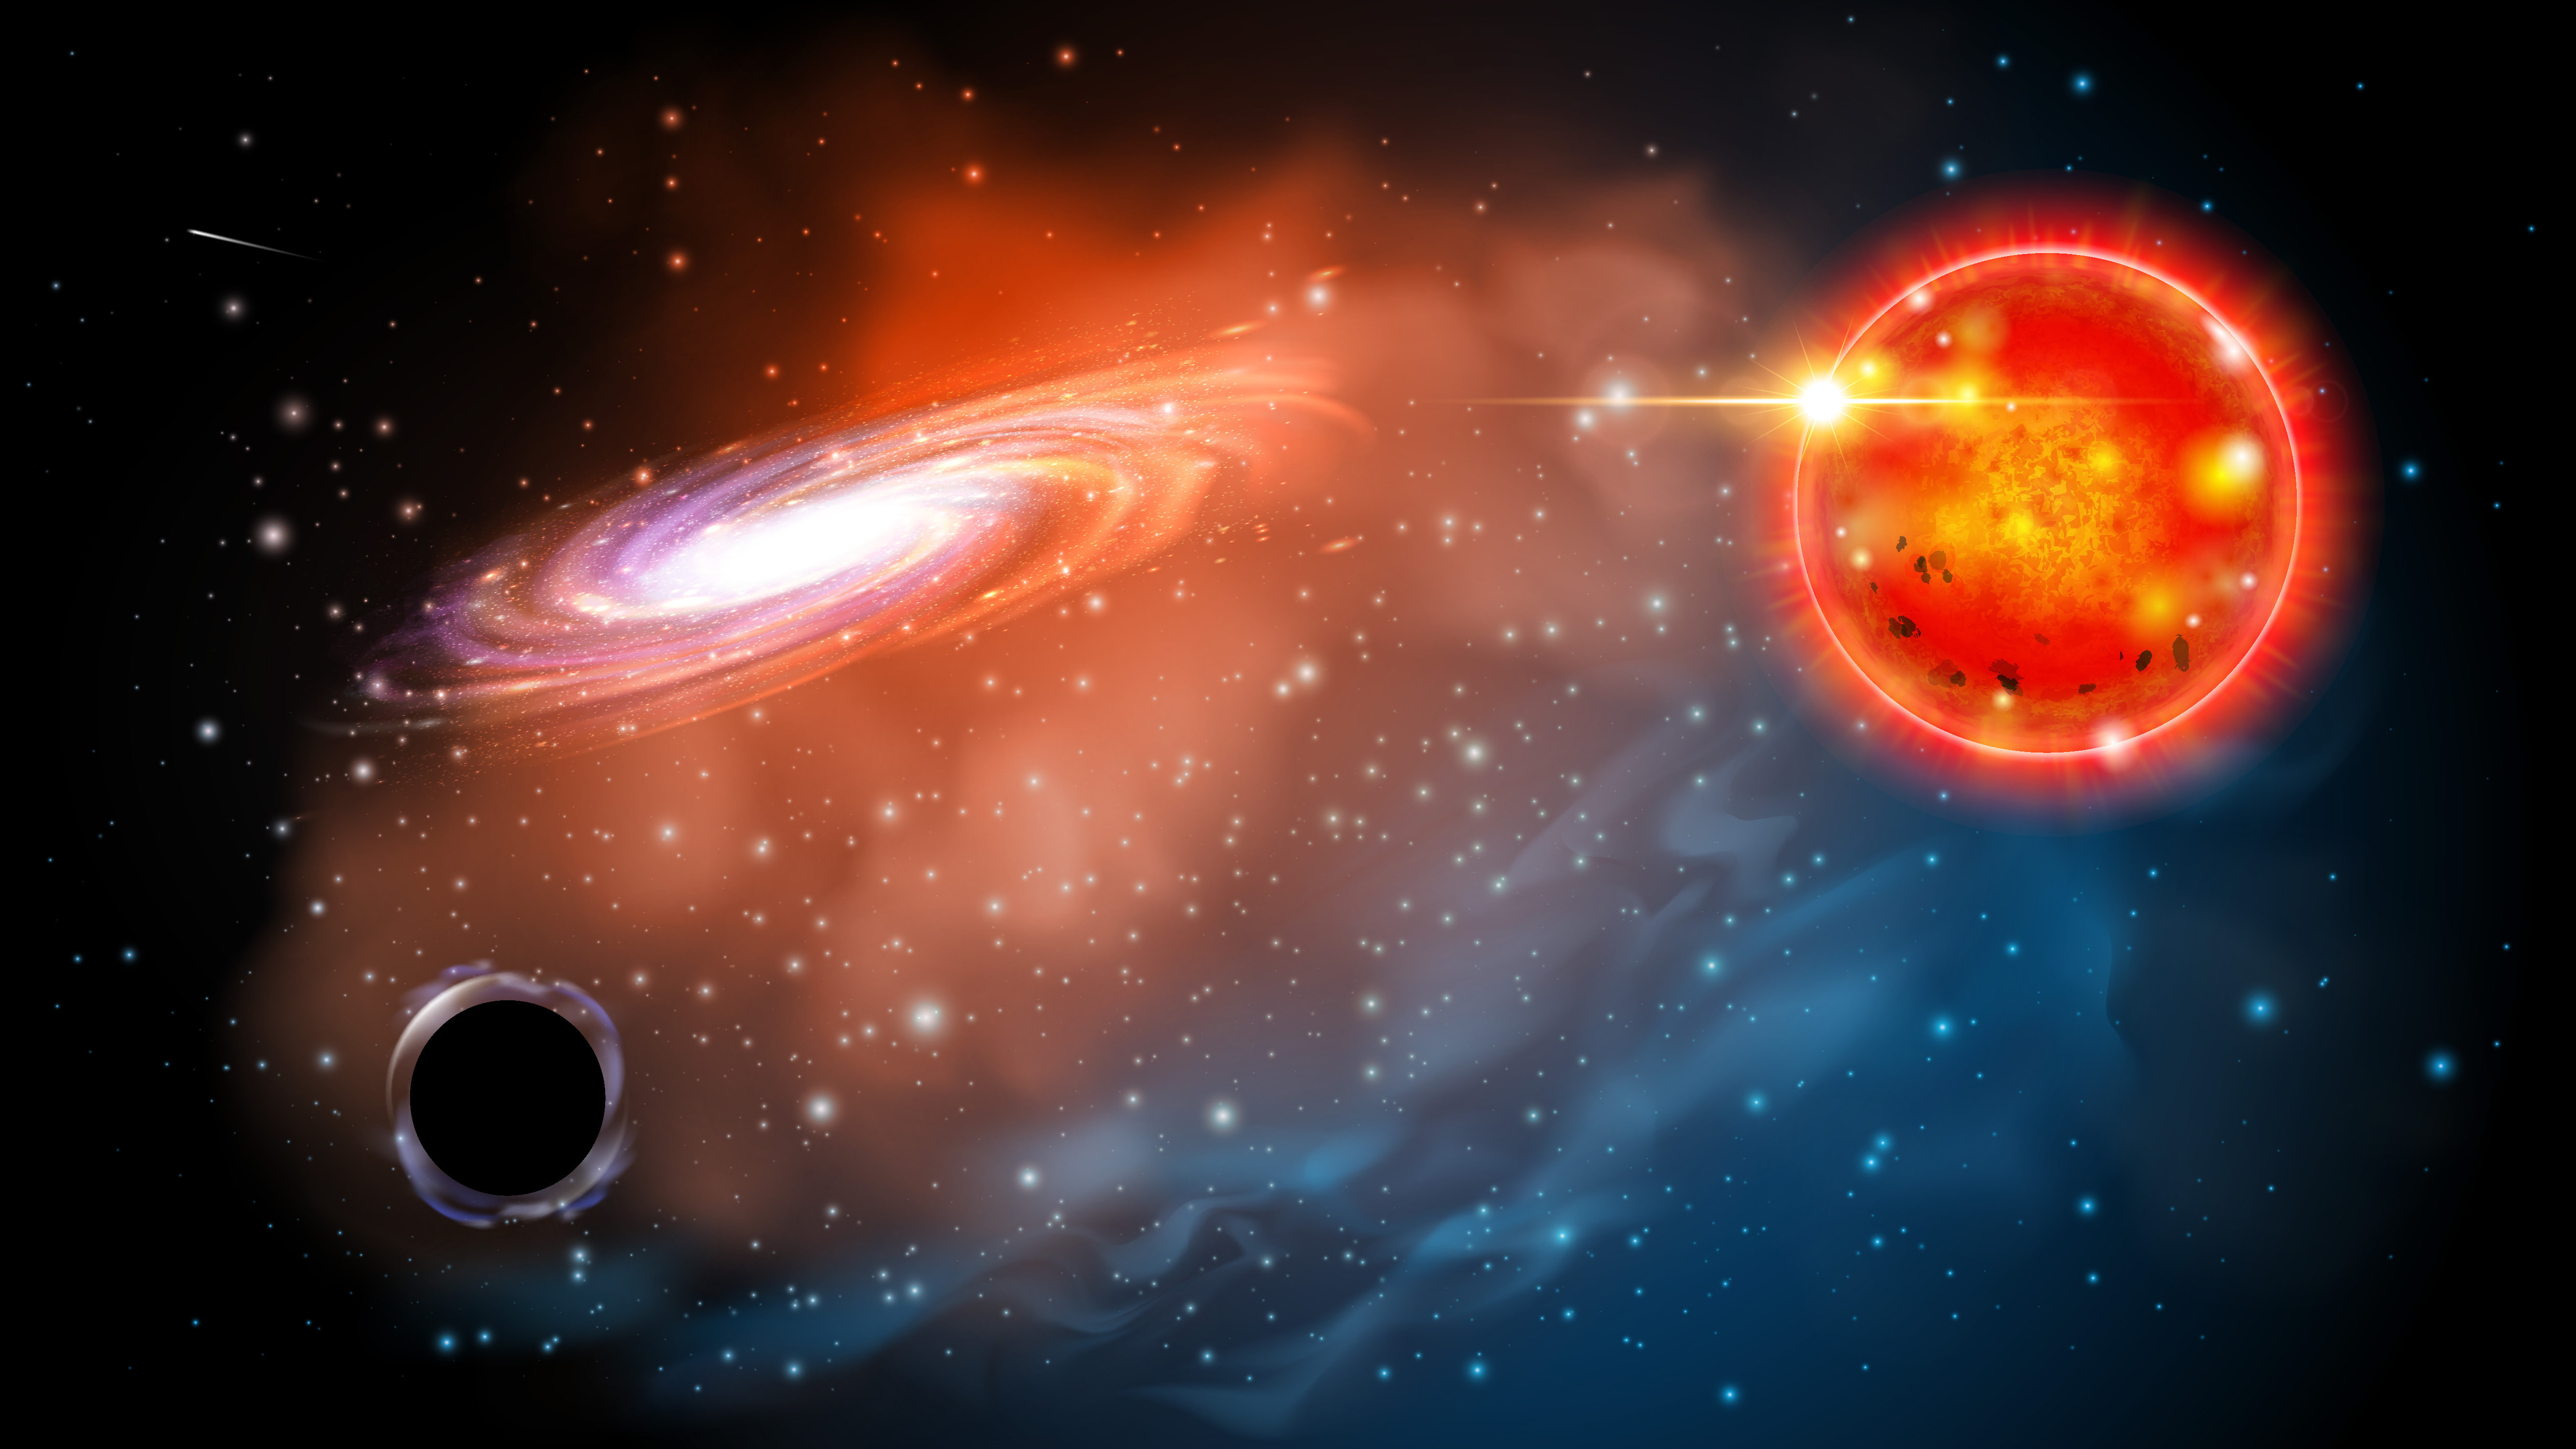 Representación artística del agujero negro identificado en este estudio. El agujero negro (abajo a la izquierda) se ve cerca de una estrella gigante roja. El descubrimiento muestra que puede haber toda una clase de agujeros negros que los astrónomos no sabían que existían. Crédito: OSU, Jason Shults.